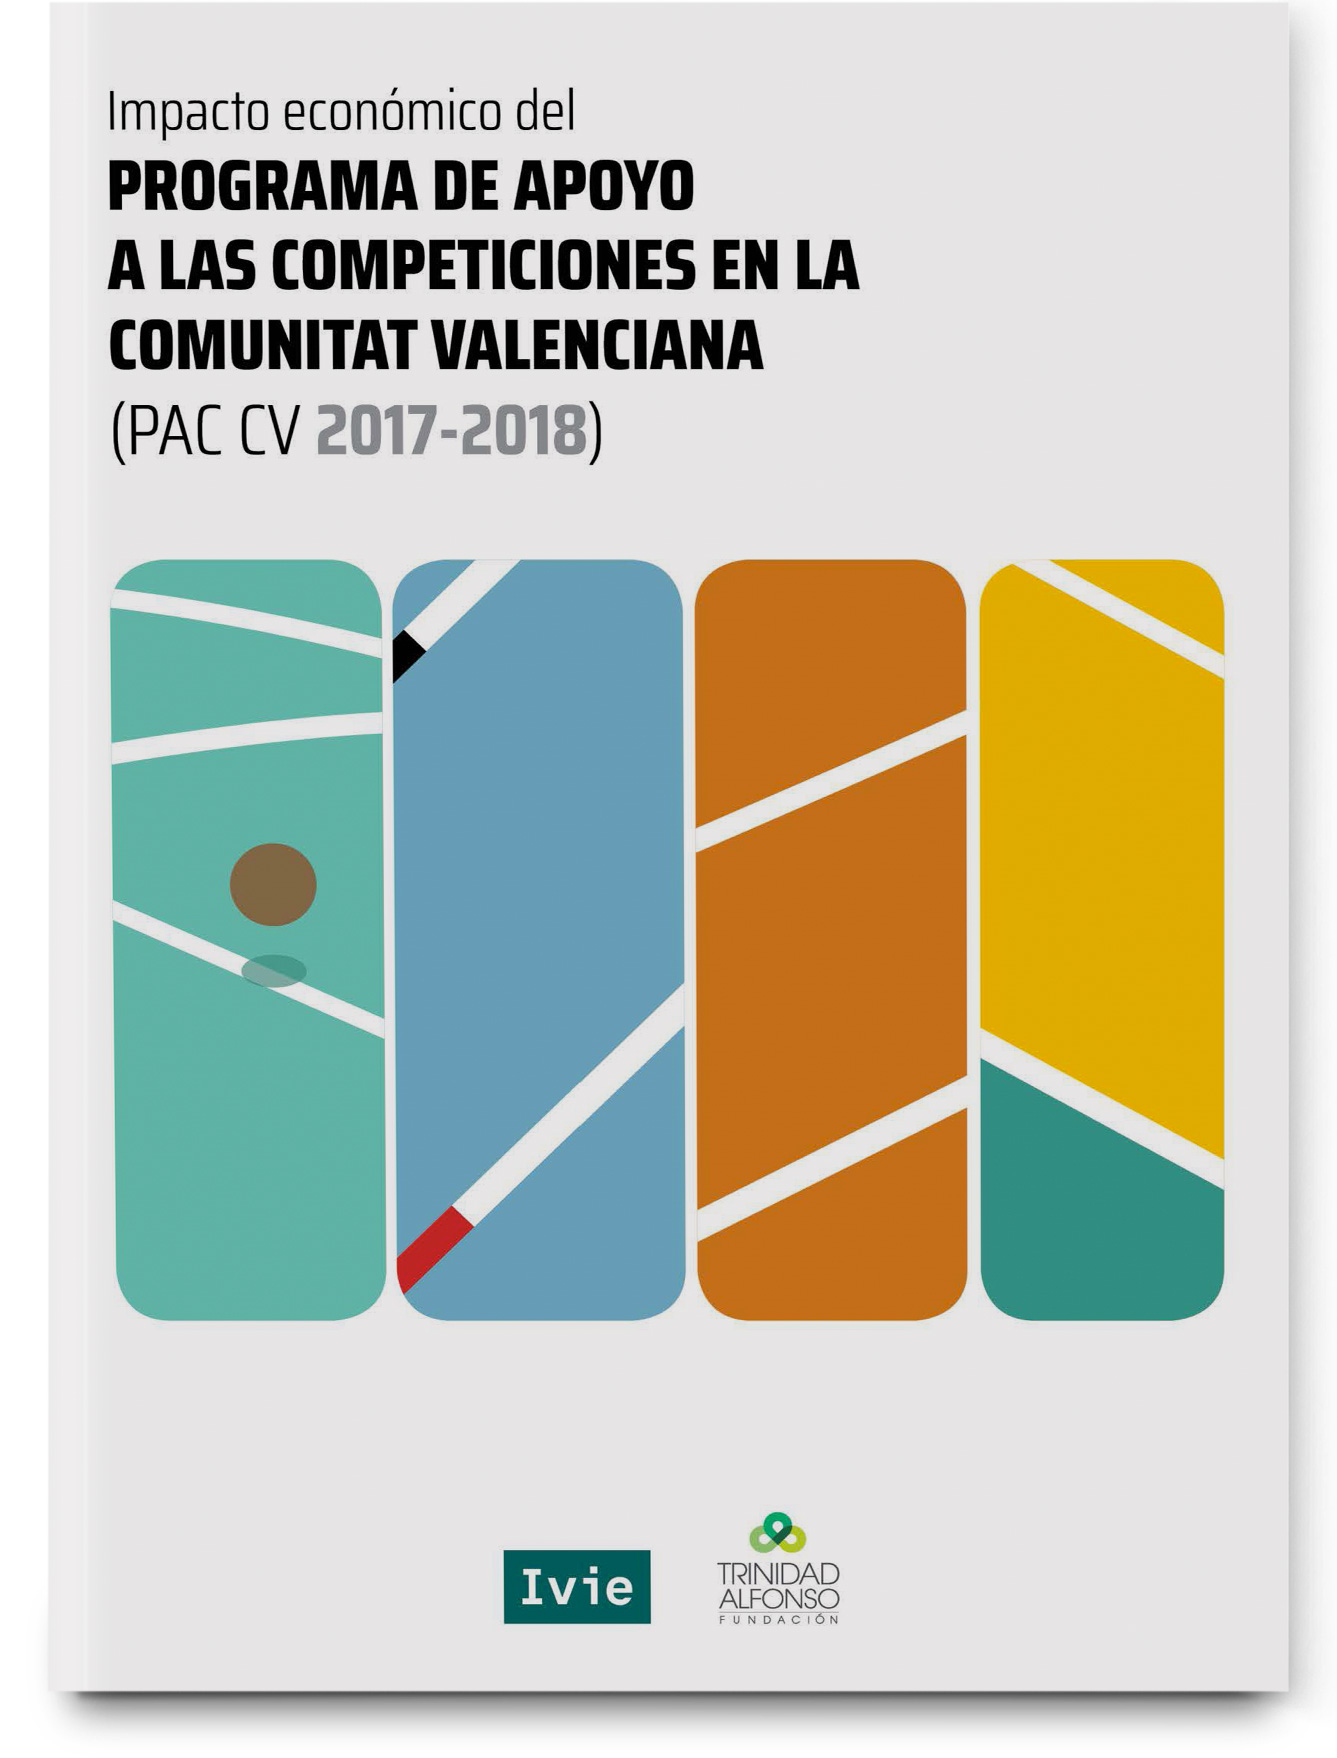 Impacto económico del Programa de Apoyo a competiciones deportivas de la Comunitat Valenciana de la Fundación Trinidad Alfonso 2017. Segunda edición